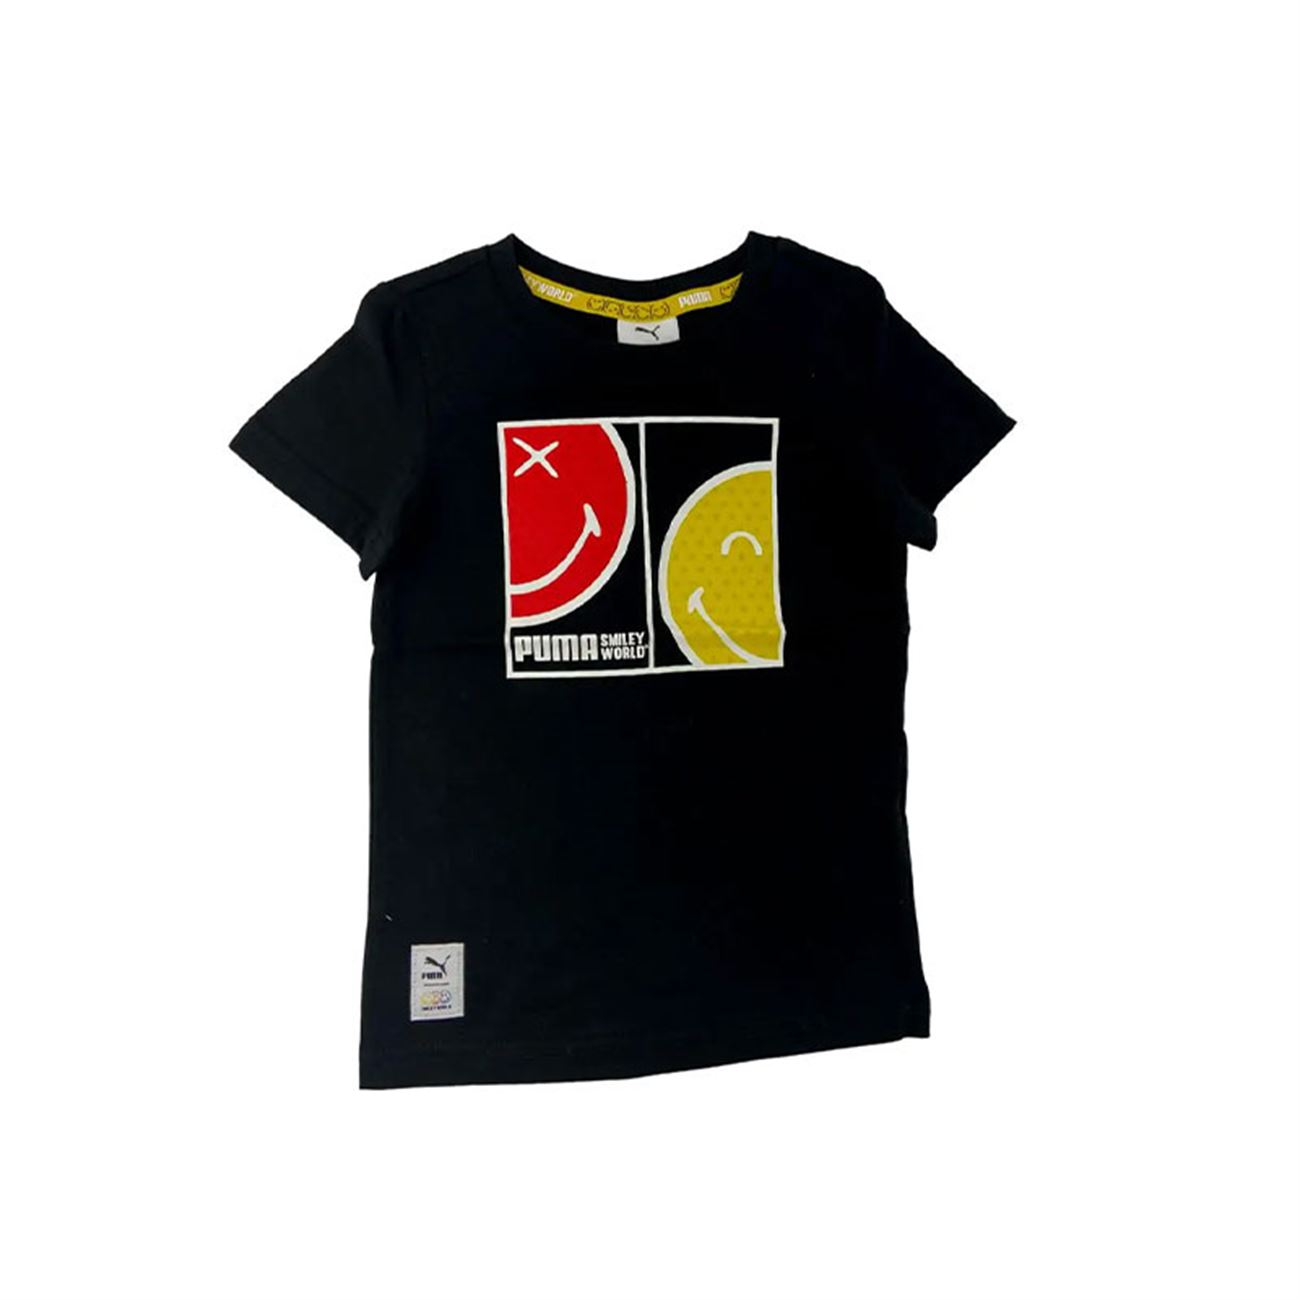 Puma Smile World Çocuk T-Shirt 670345-01 Siyah